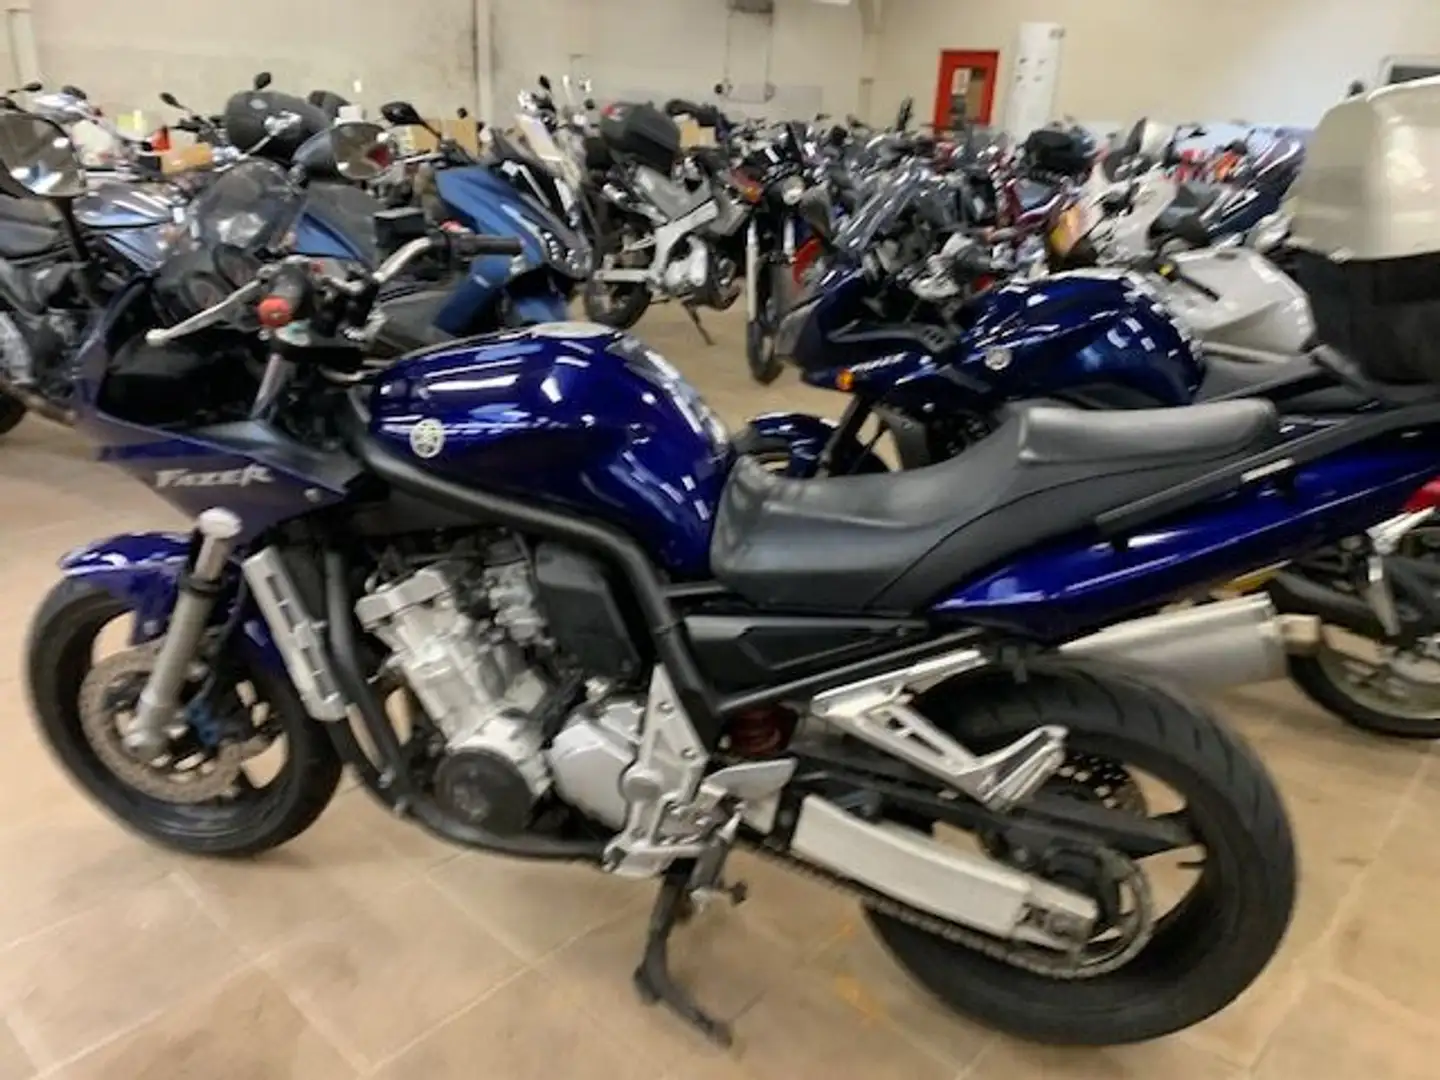 Yamaha Bleu - 2